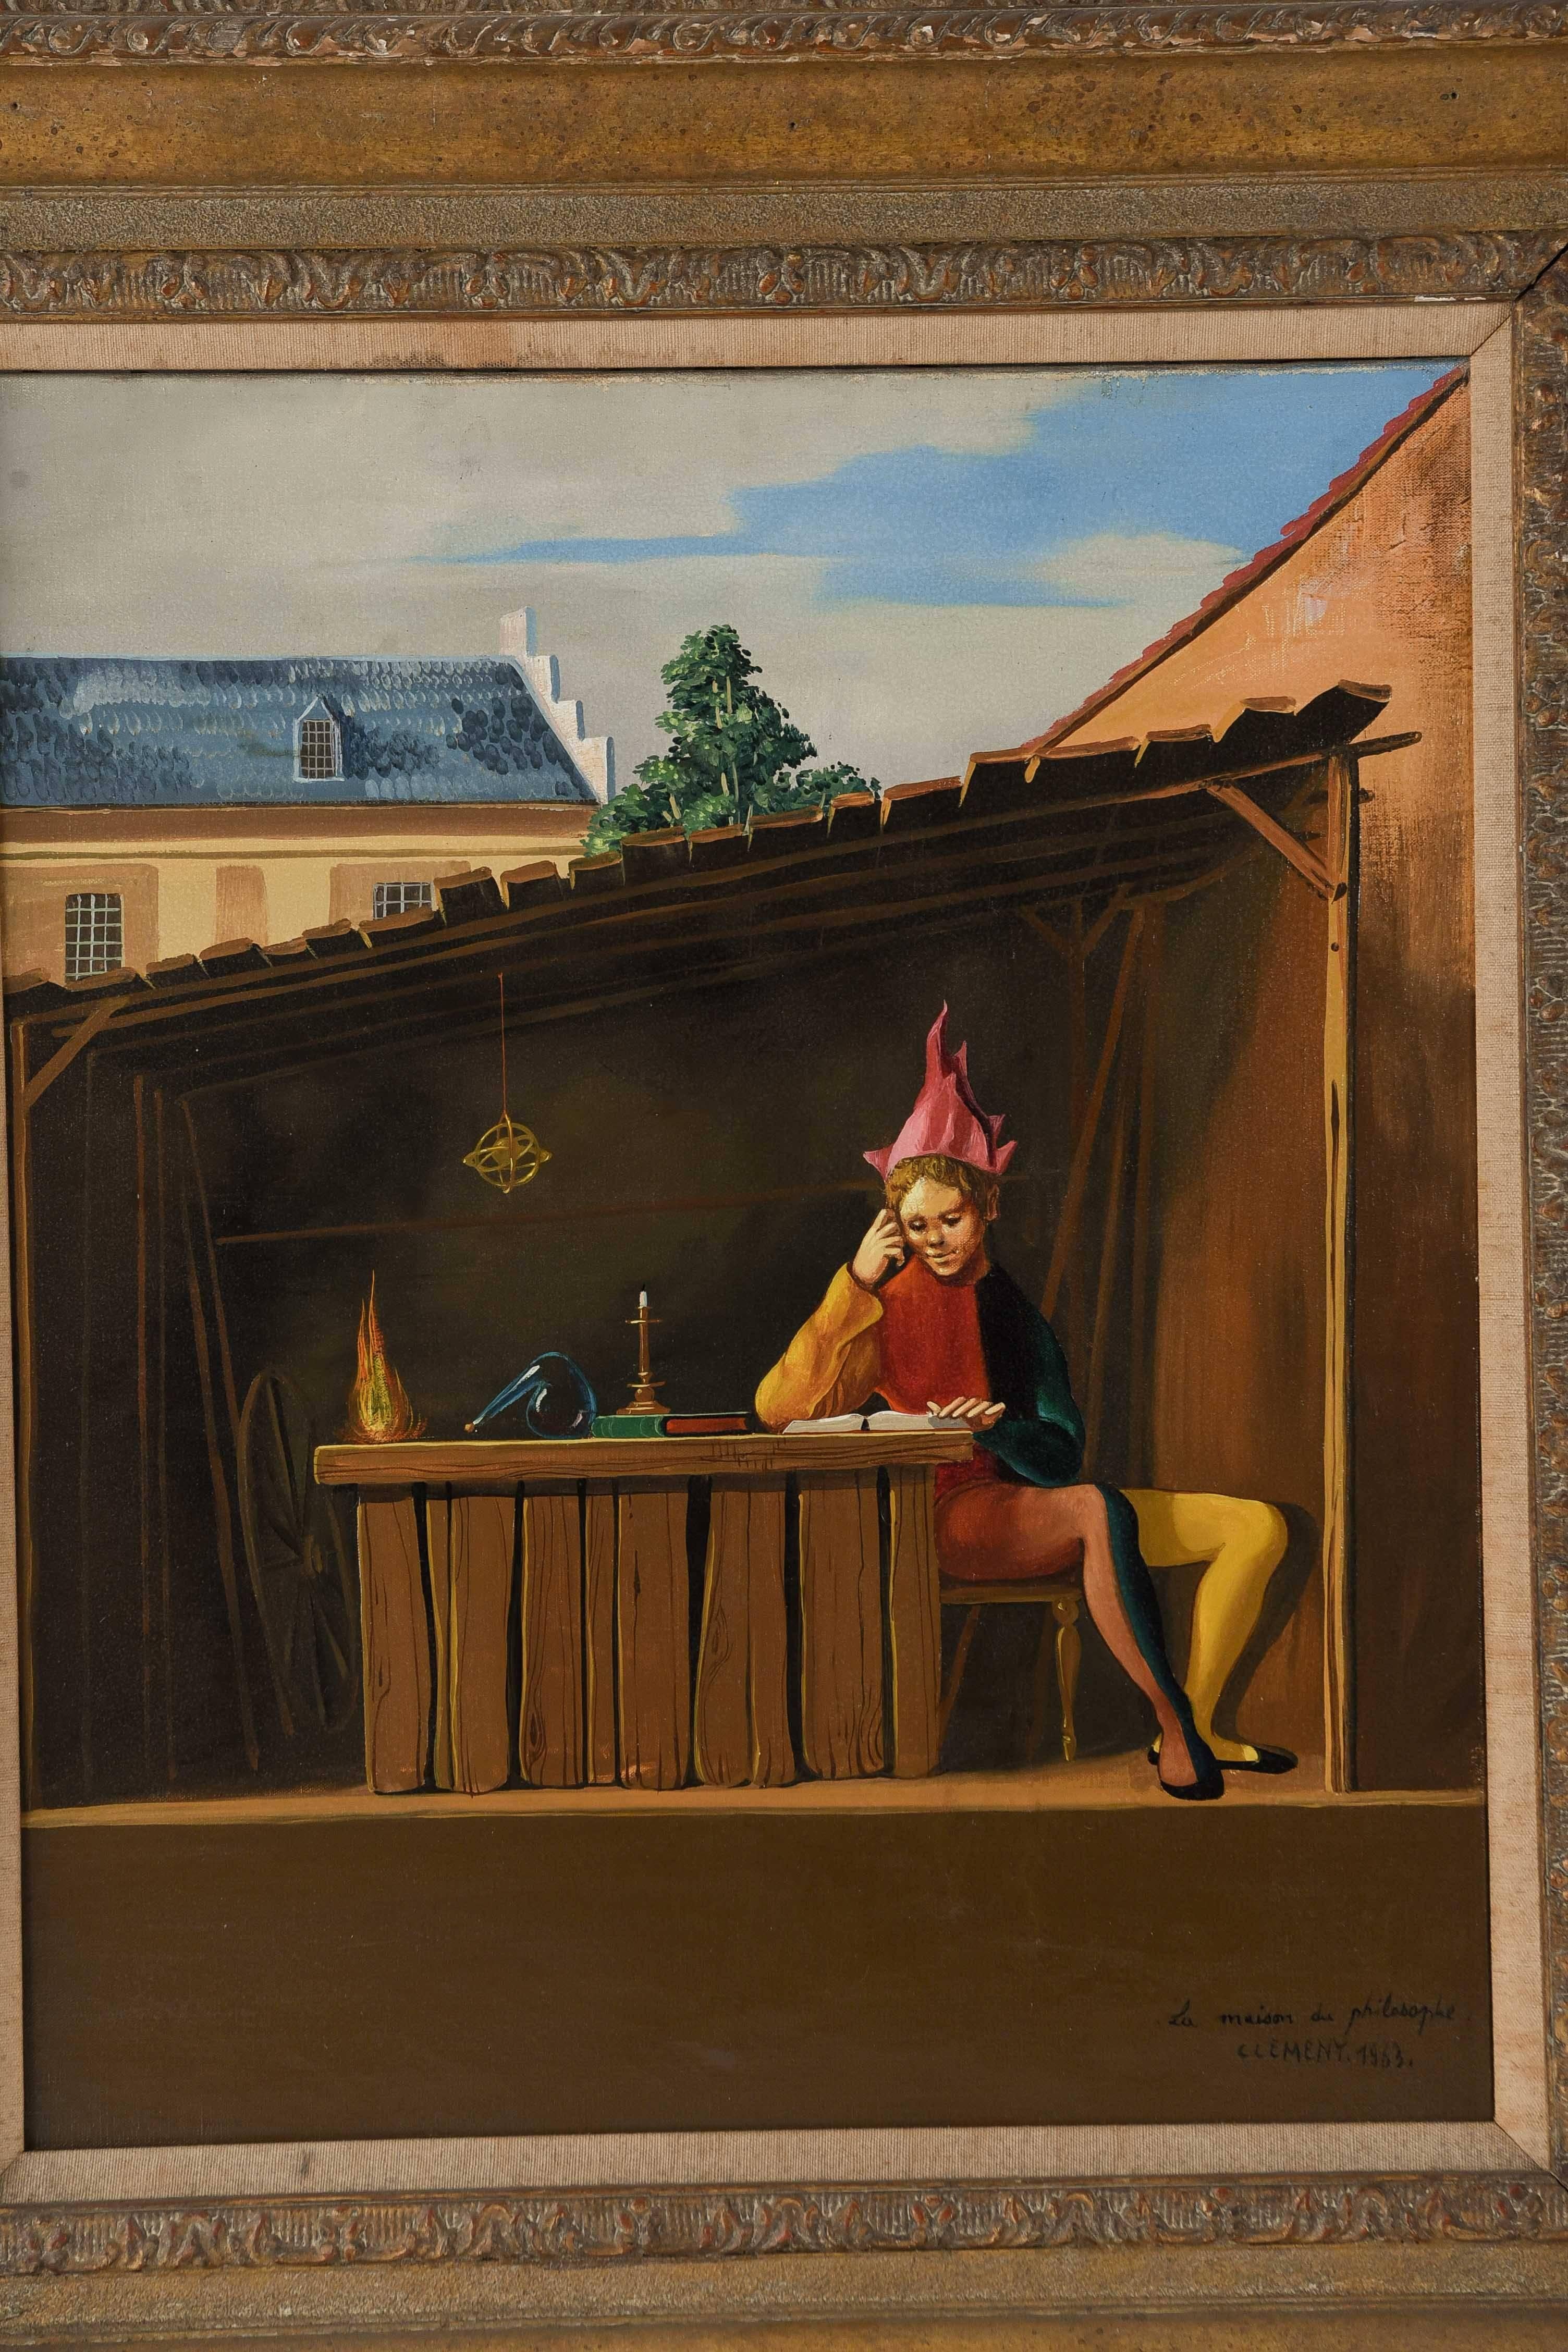 Peinture surréaliste de l'artiste français classé Jean Pierre Clément représentant un personnage masculin portant des vêtements de bouffon et une coiffe rouge clair. Il semble lire à l'intérieur d'un petit abri couvert, près d'une bougie